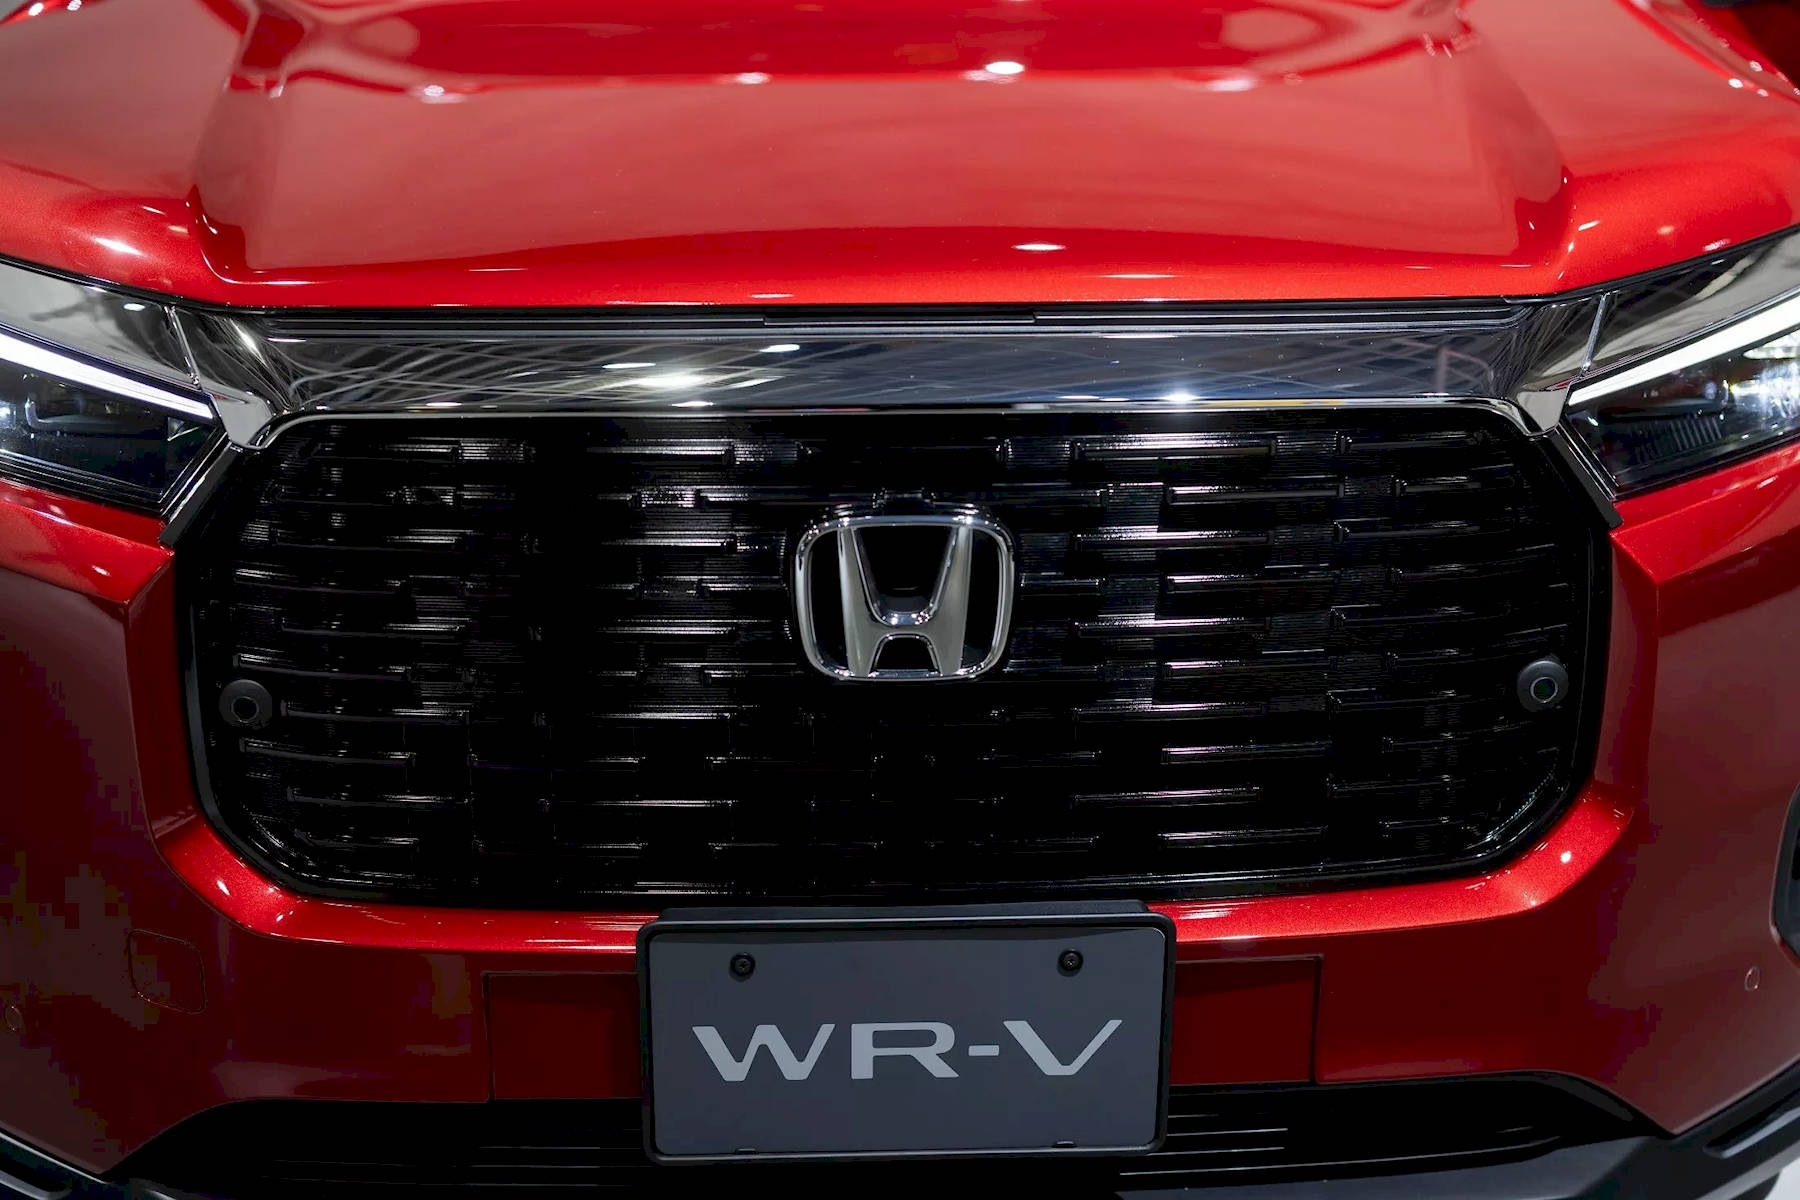 Honda WR-V ra mắt tại Nhật Bản, giá từ 312 triệu đồng - Ảnh 2.